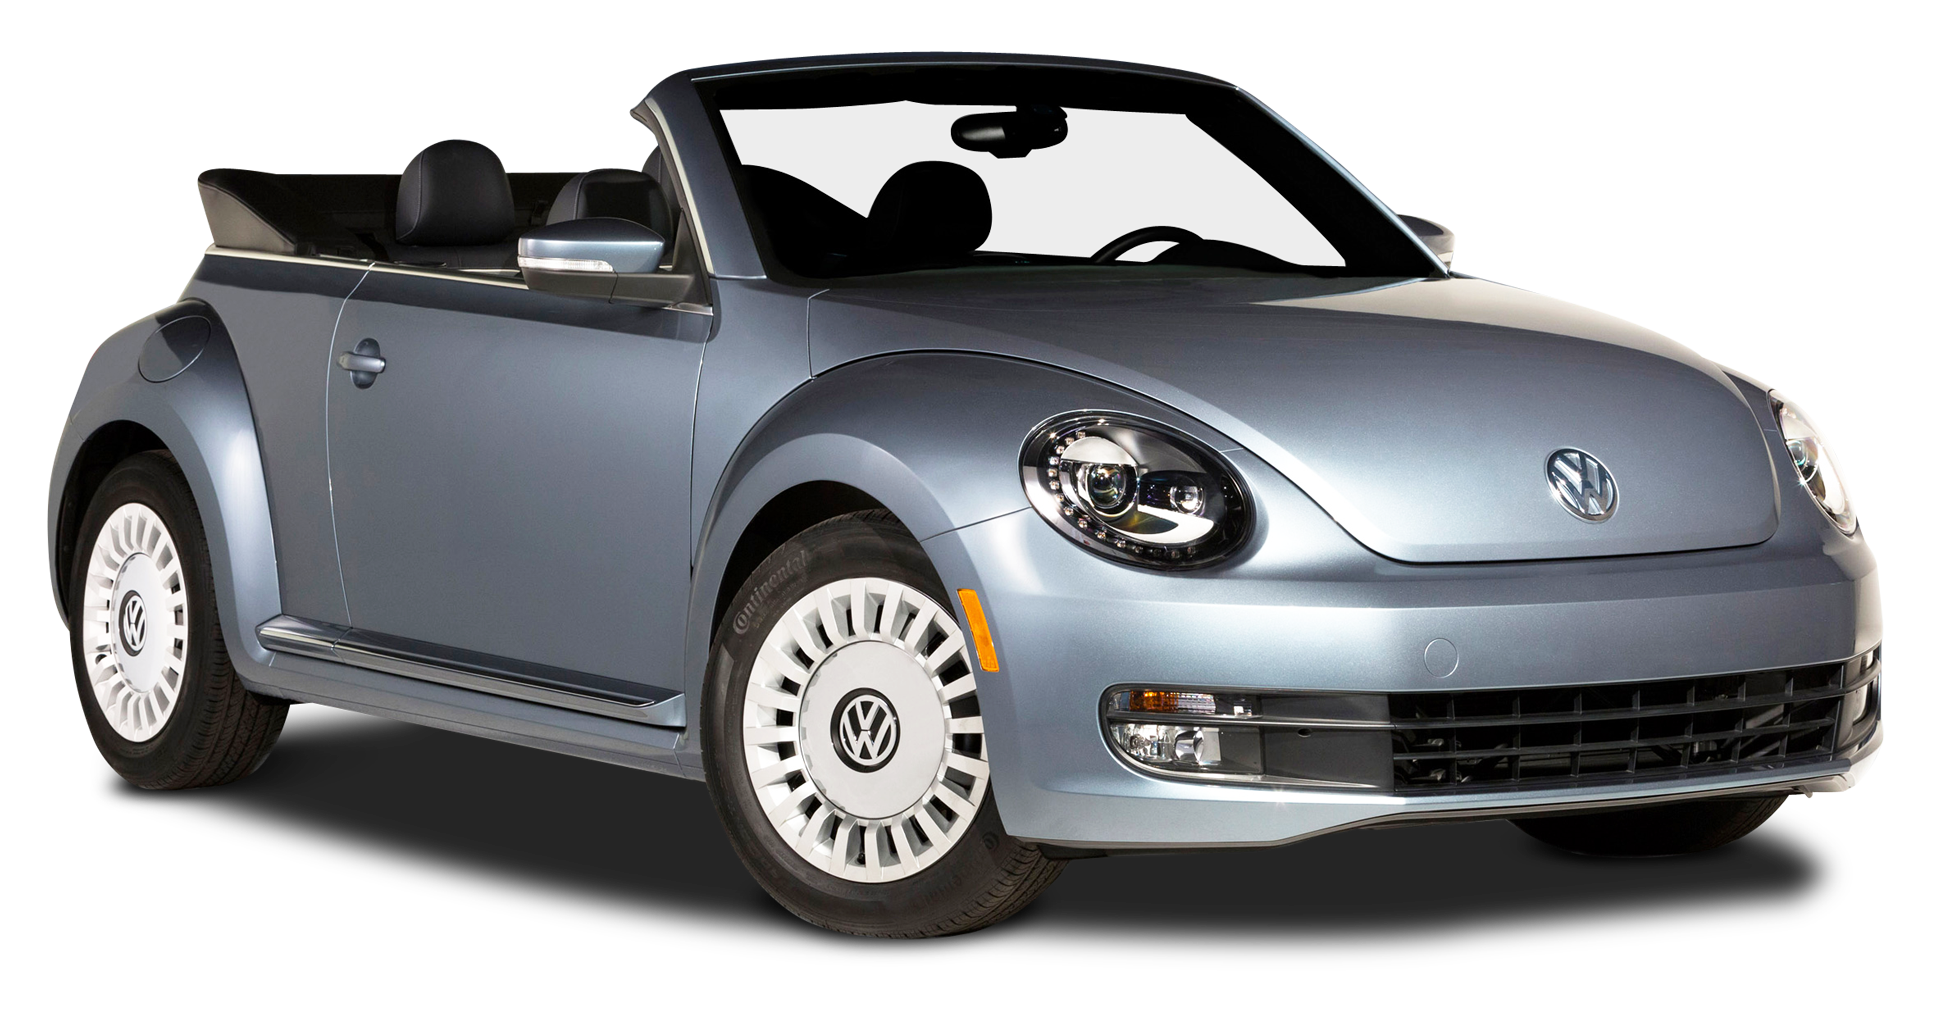 1 серую машину. VW Beetle 2018 год кабриолет. Кабриолет клипарт. Серая машина на белом фоне. Авто серое на прозрачном фоне.